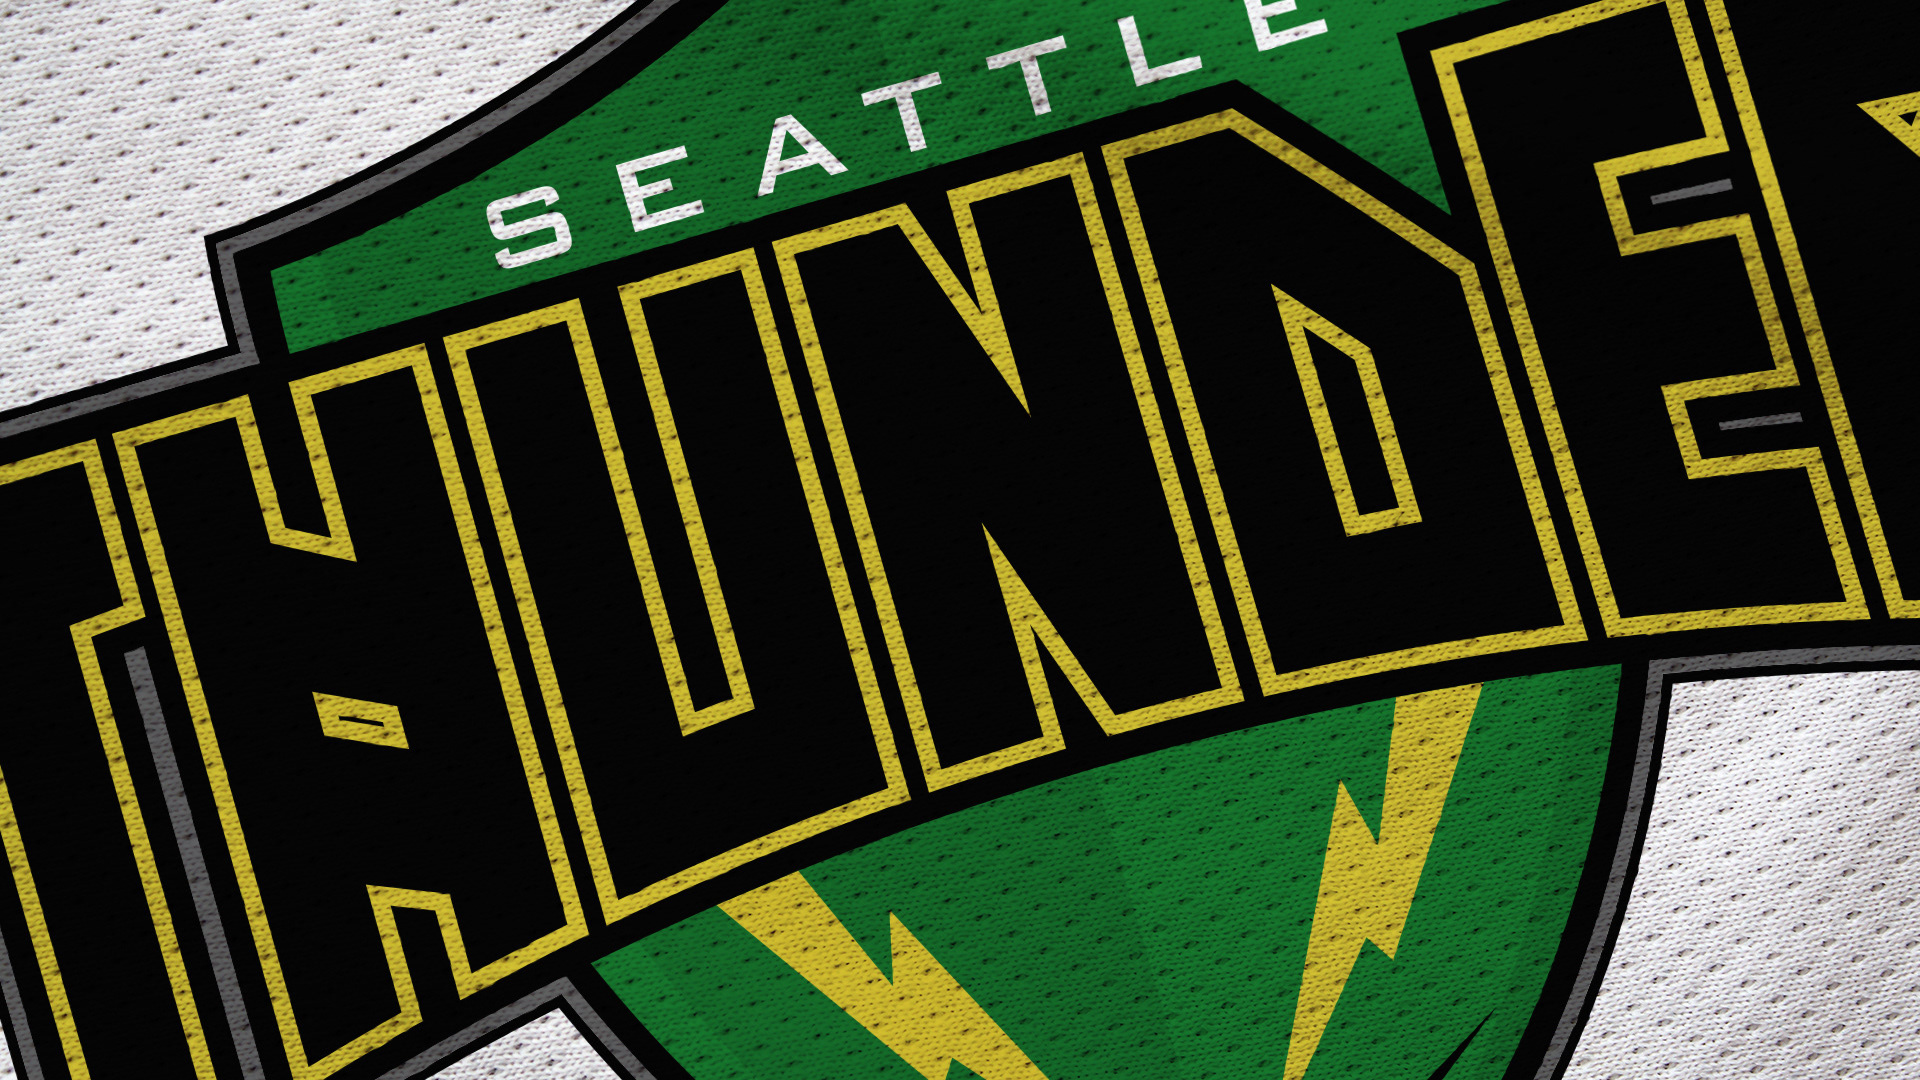 LukeIG Seattle Thunder Rebrand Concept